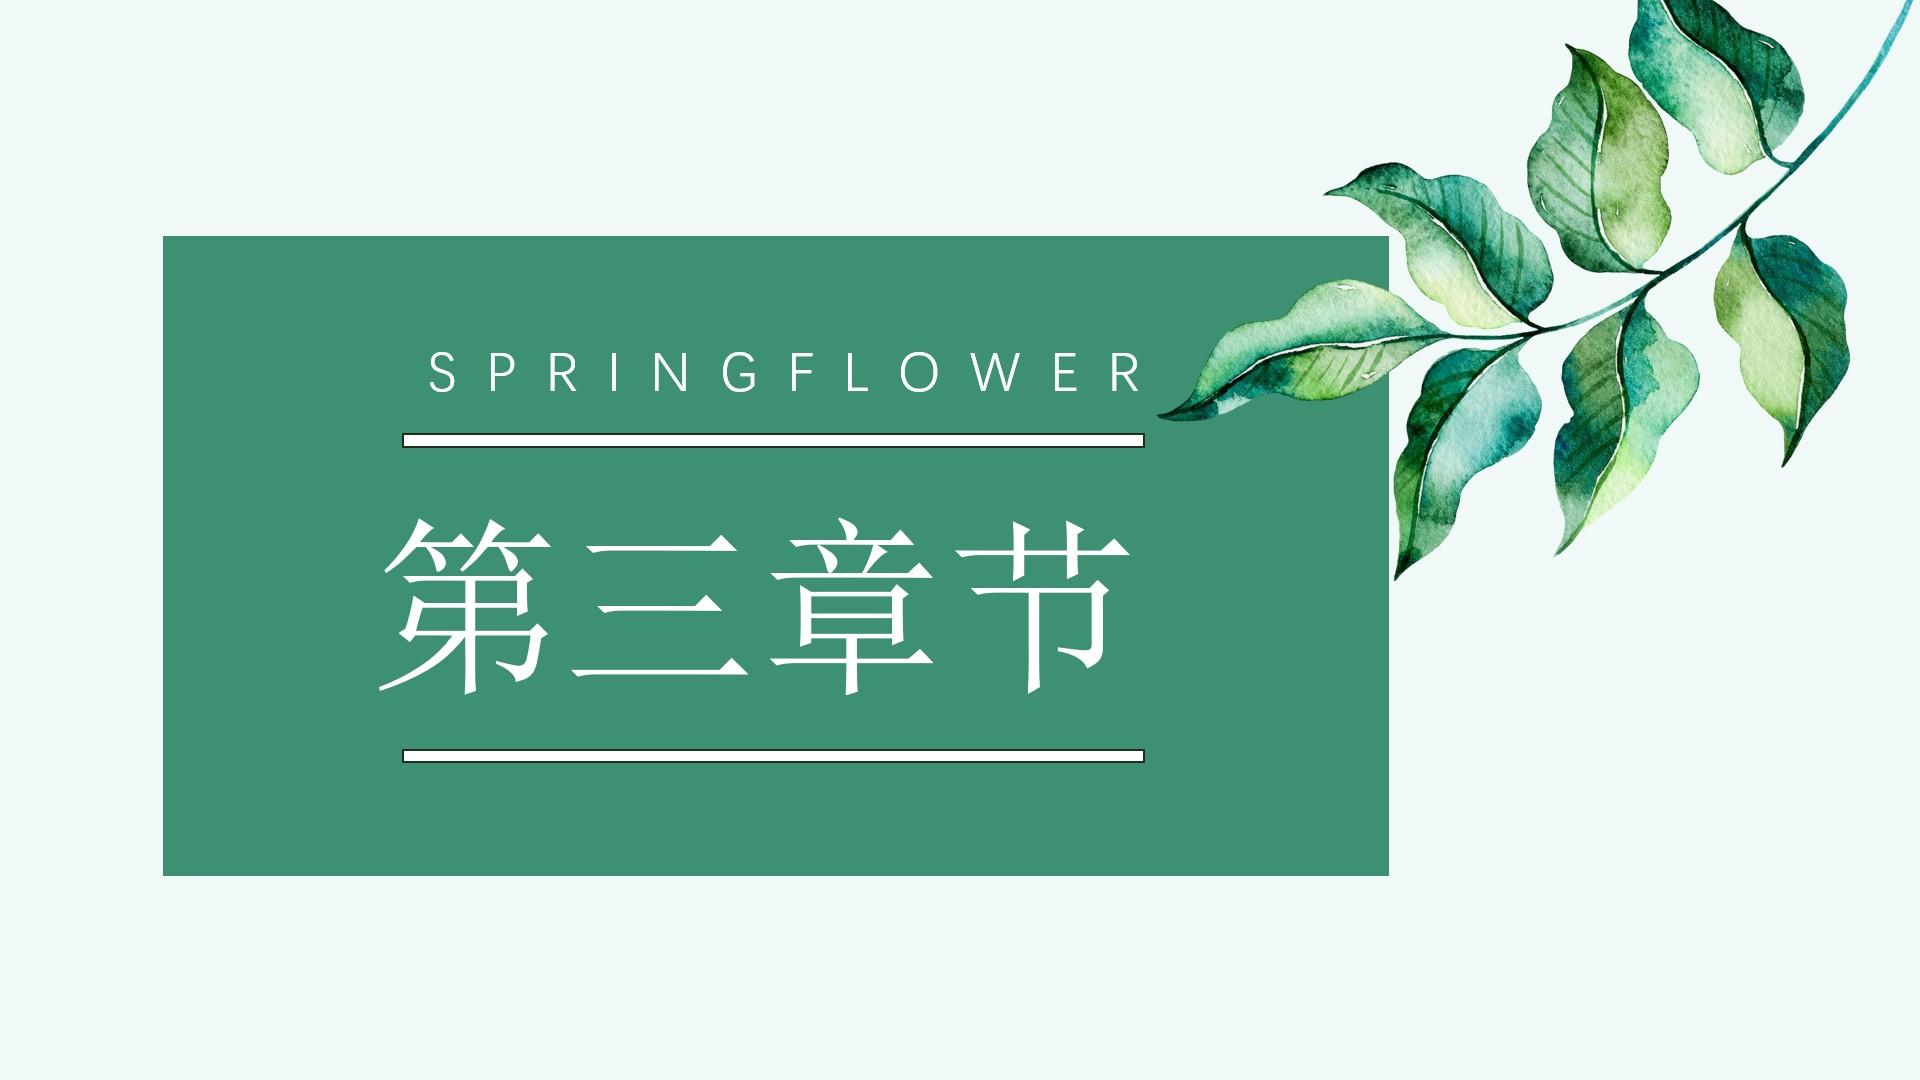 教育教学青色白色springflower云素材PPT模板1672509147116